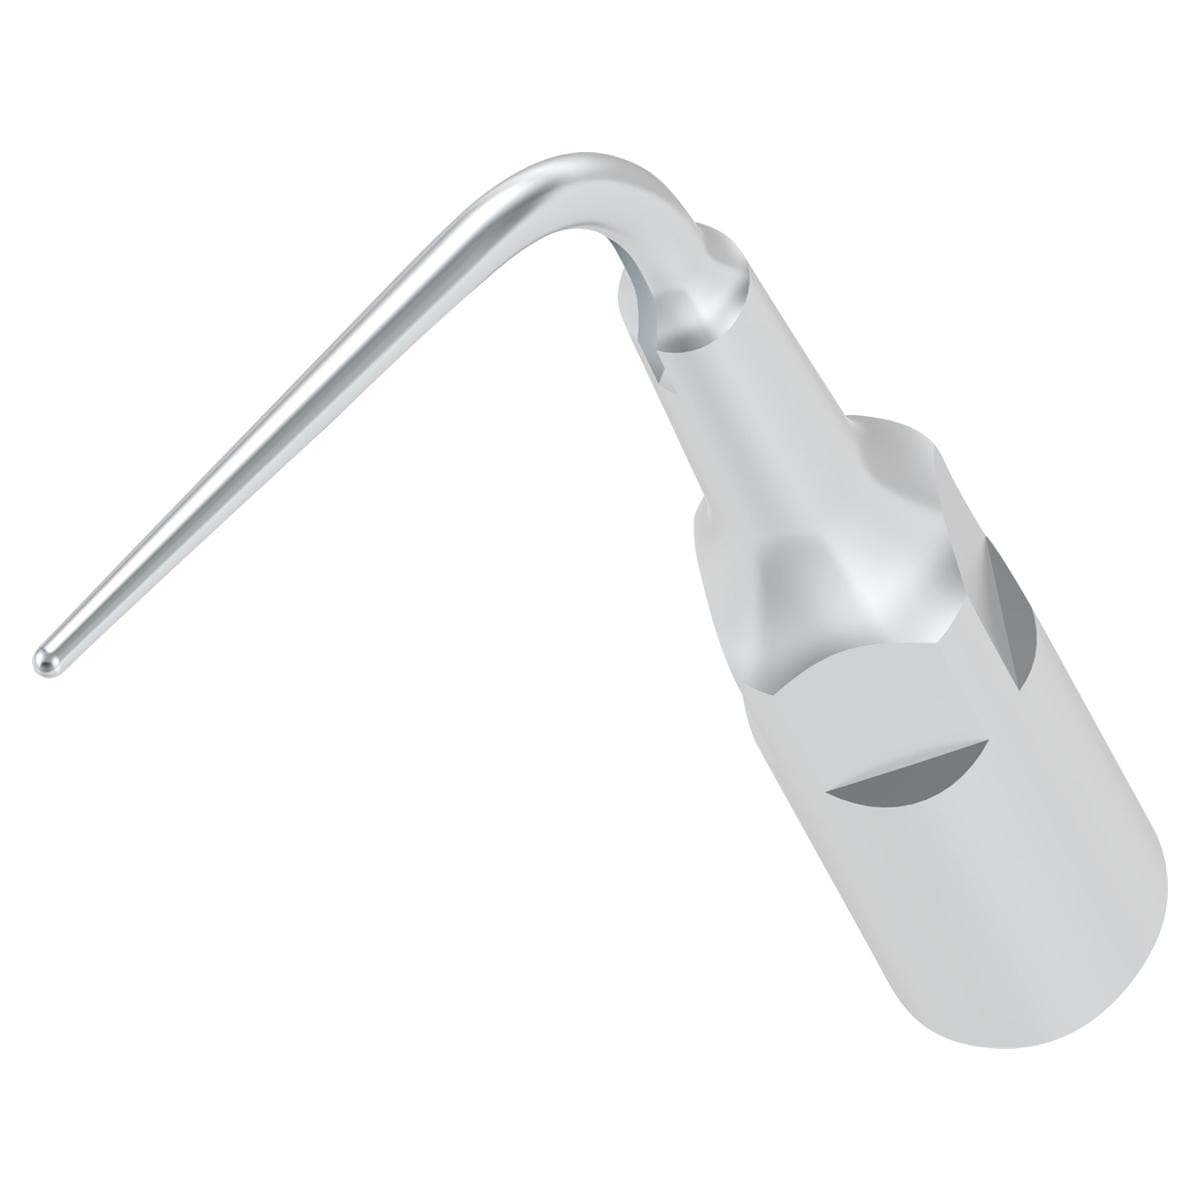 BA Scaler Tips - BAC33E, voor de verwijdering van tandsteen diep in de parodontale pocket en spoelen van de parodontale pocket